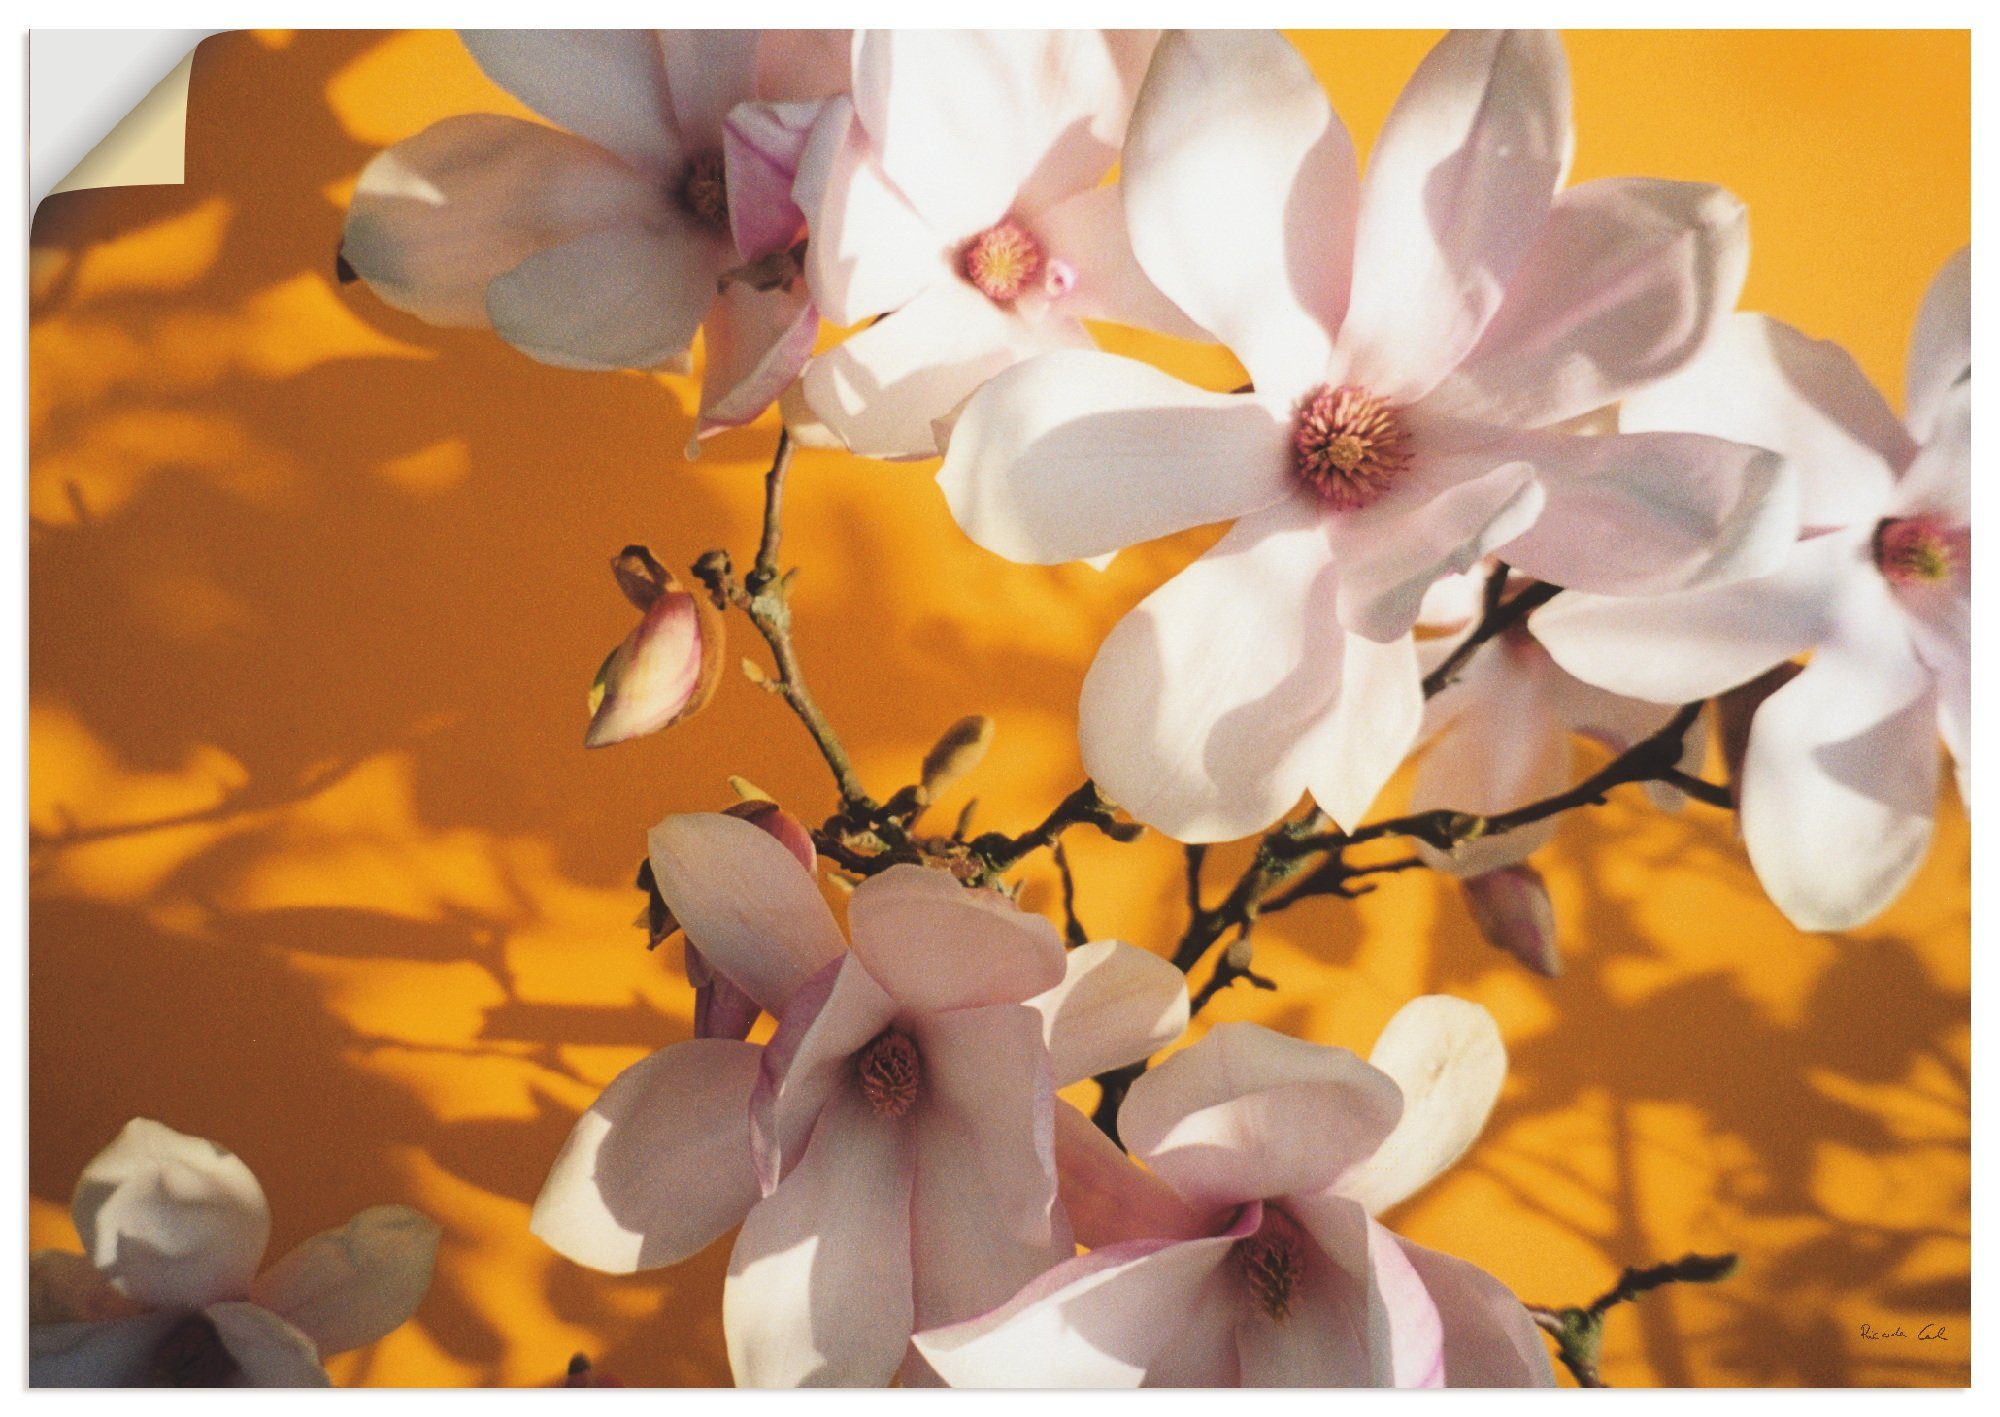 Artland Artprint Fotocollage magnolia in vele afmetingen & productsoorten - artprint van aluminium / artprint voor buiten, artprint op linnen, poster, muursticker / wandfolie ook g